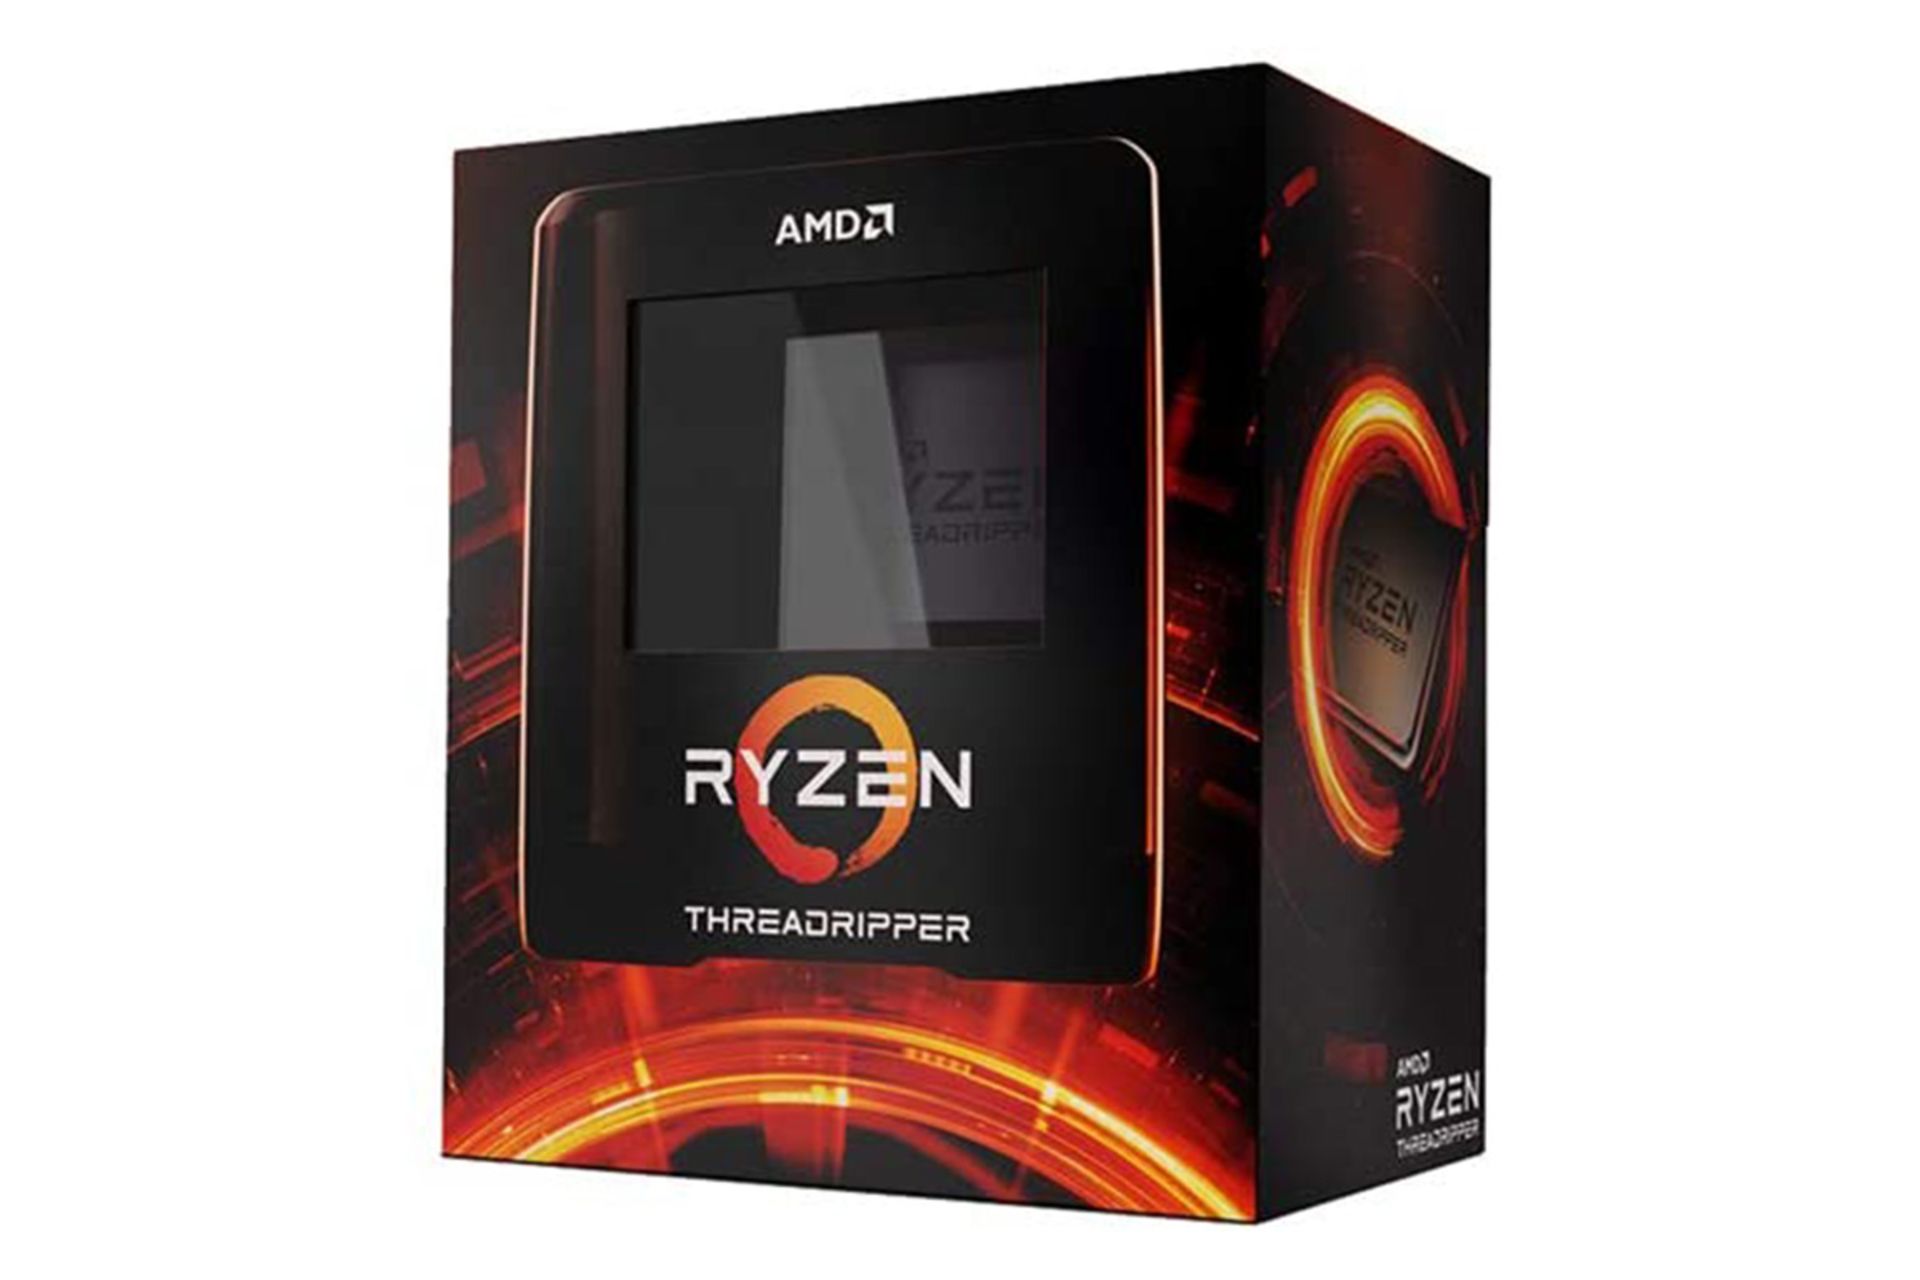 مرجع متخصصين ايران AMD Ryzen Threadripper 3970X / رايزن تردريپر